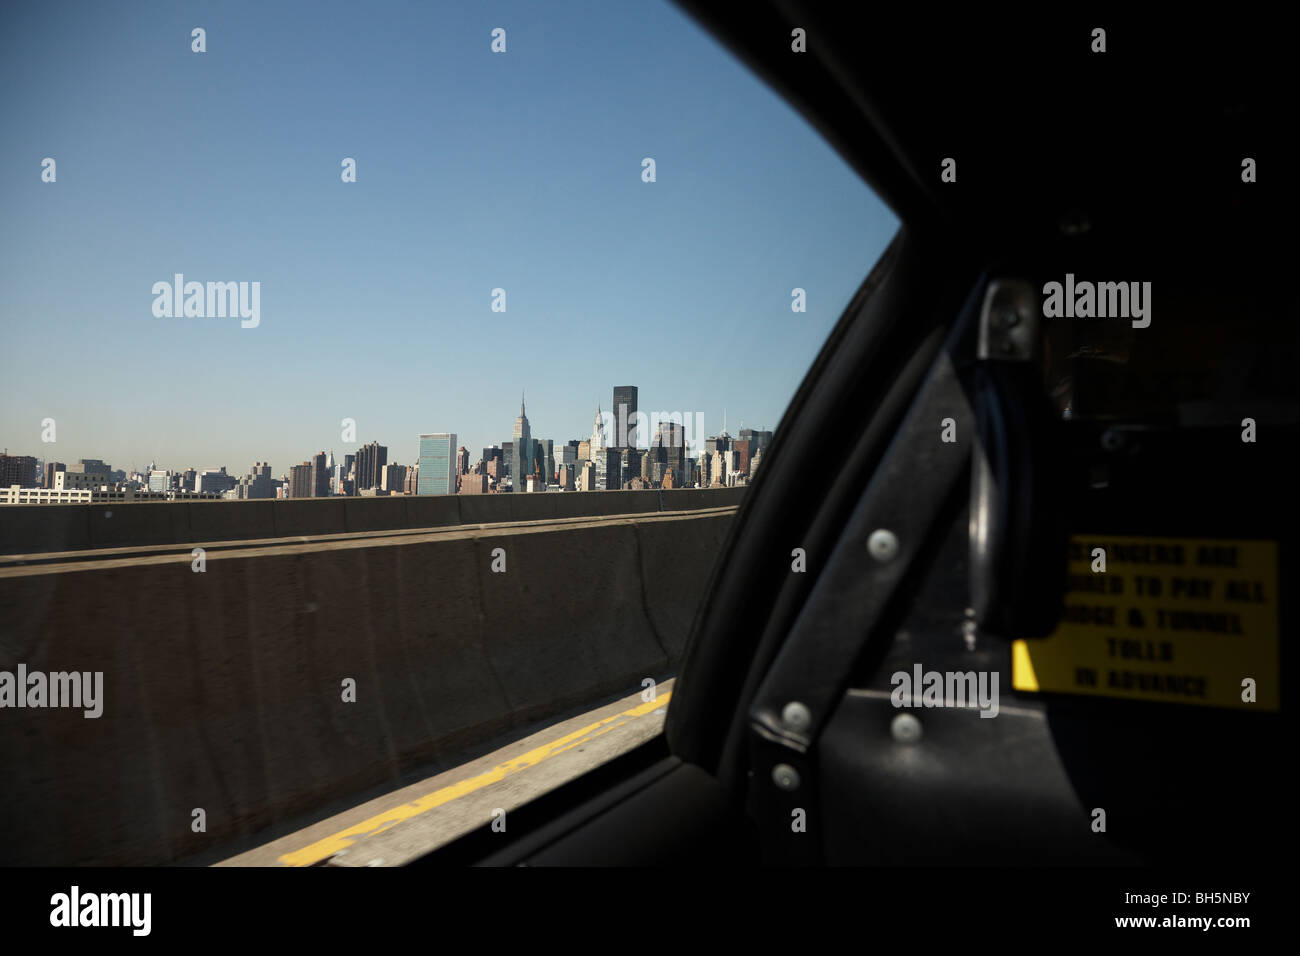 Die Skyline von Manhattan aus in ein NYC Taxi nähert sich Queensboro Bridge, New York City, New York USA Stockfoto